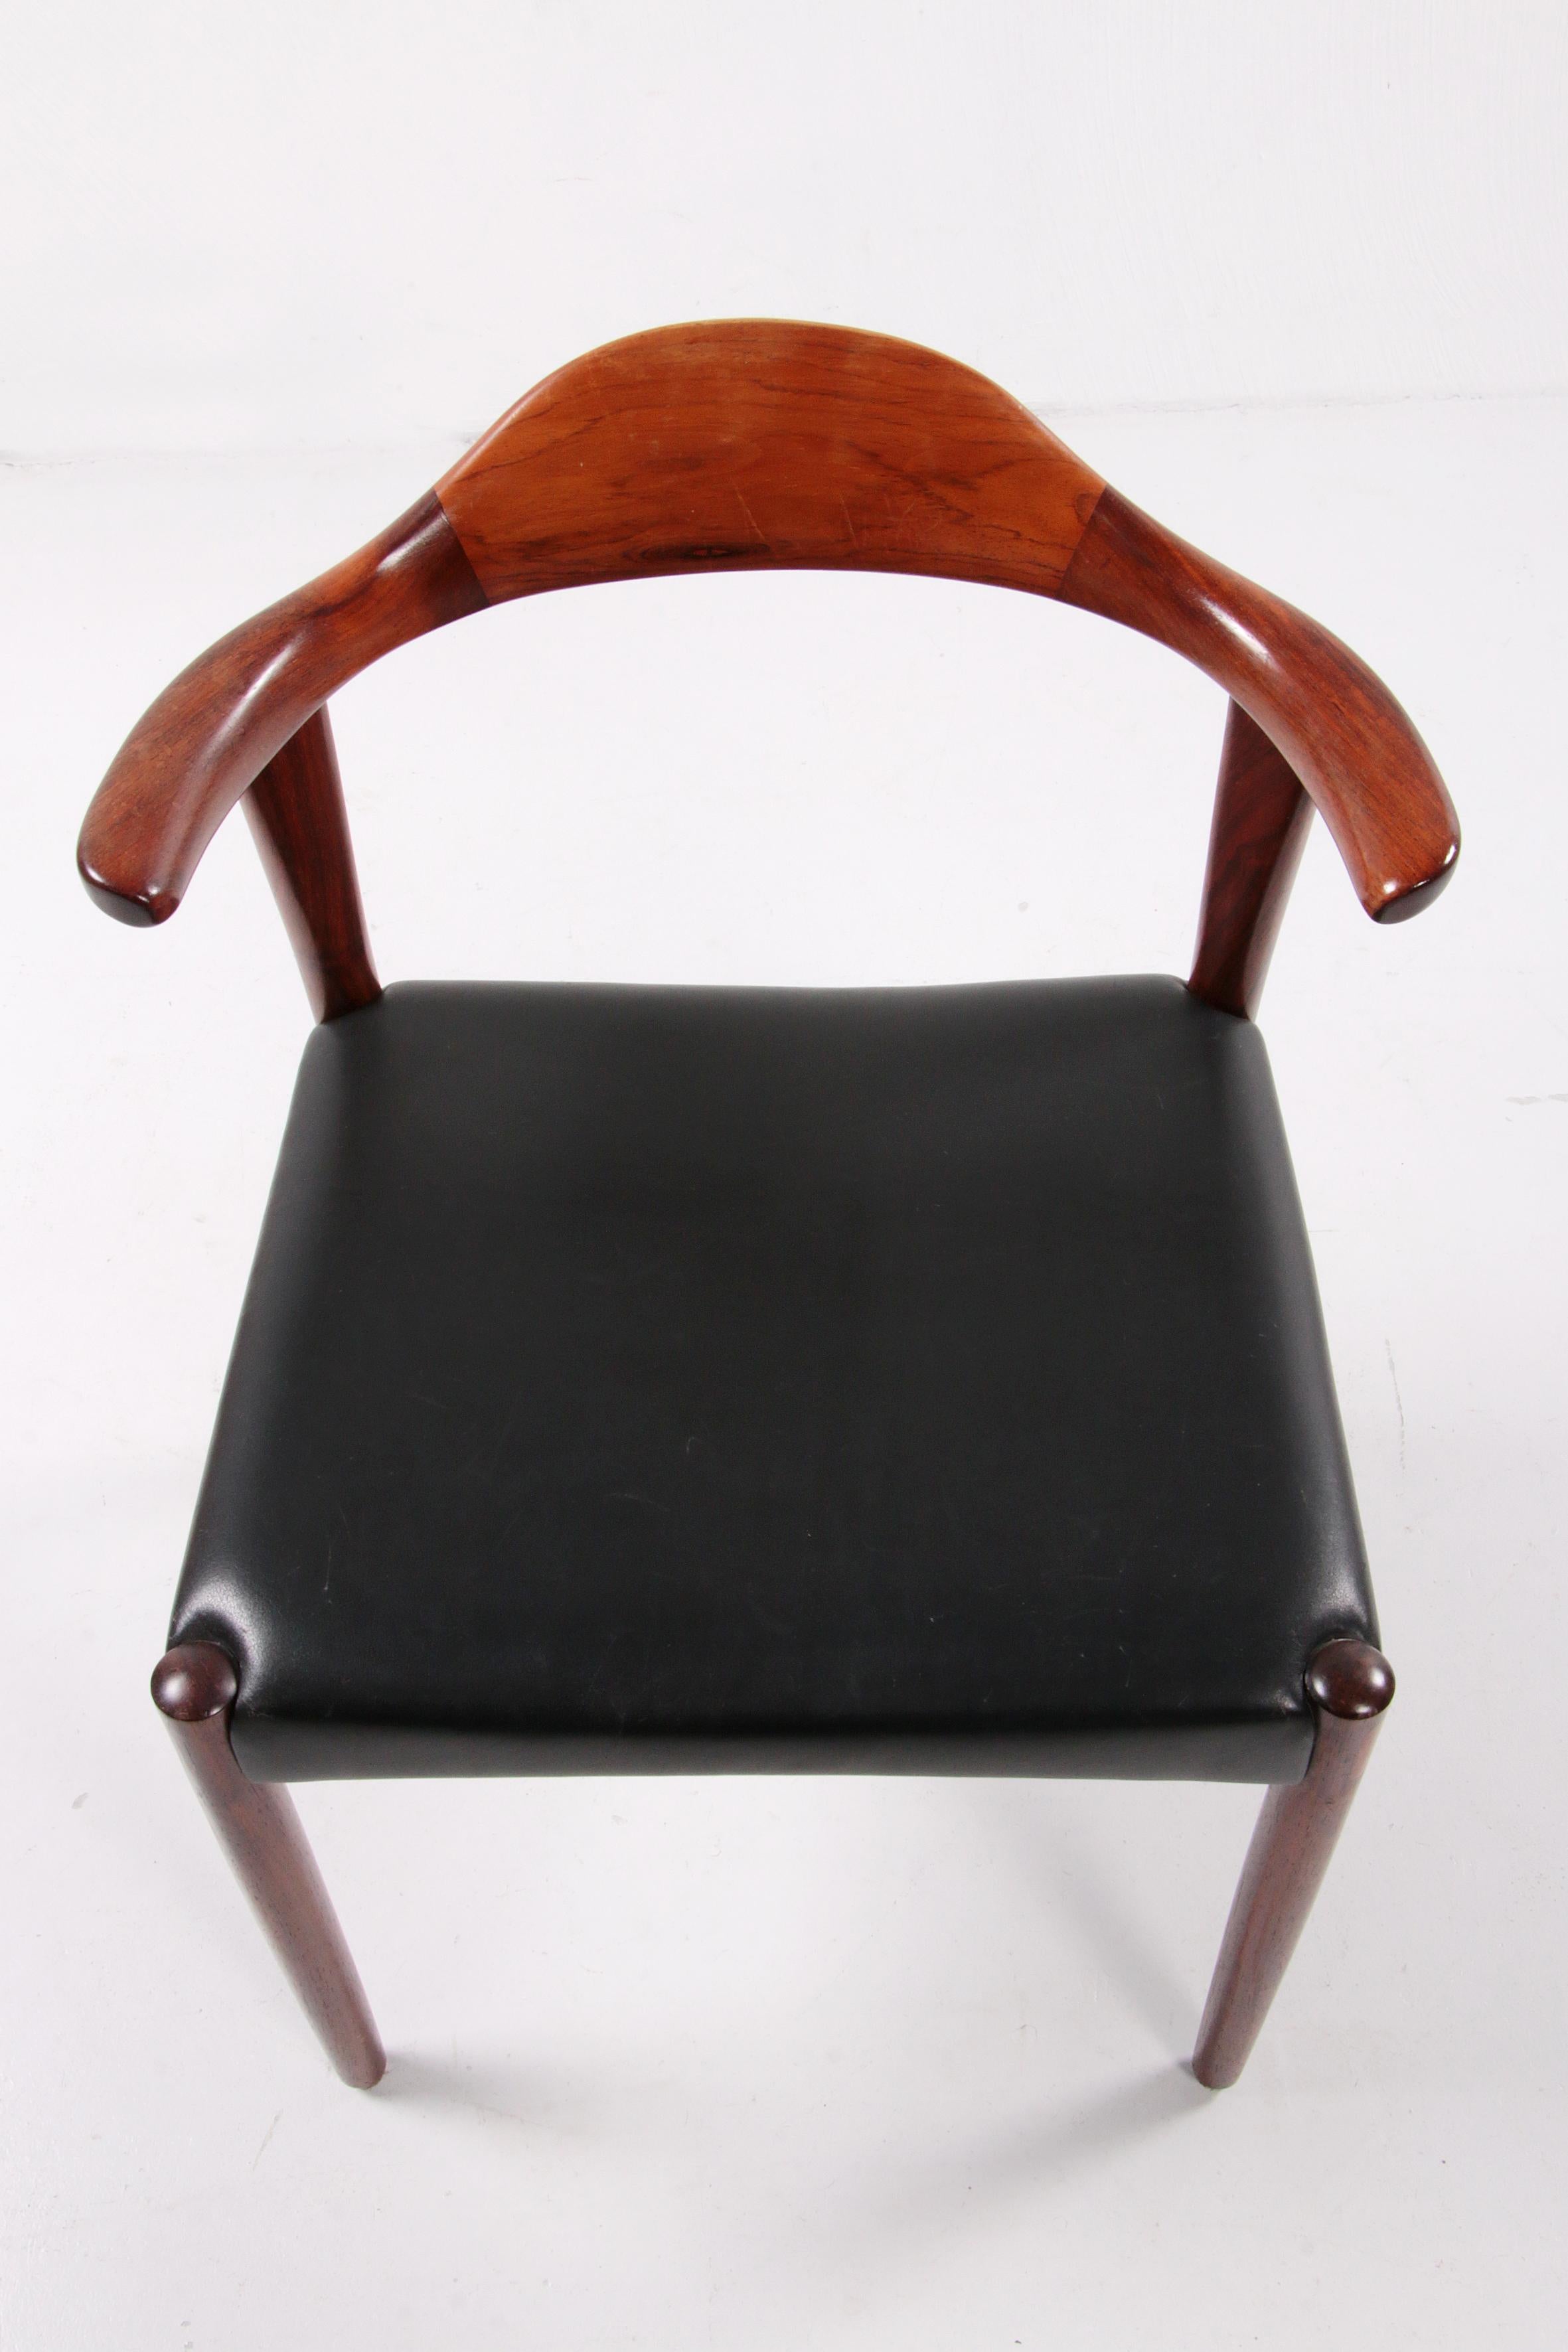 Jacob Hermann Dark Wood Dining Room Chairs Randers Mobelfabriek, 1965 For Sale 4